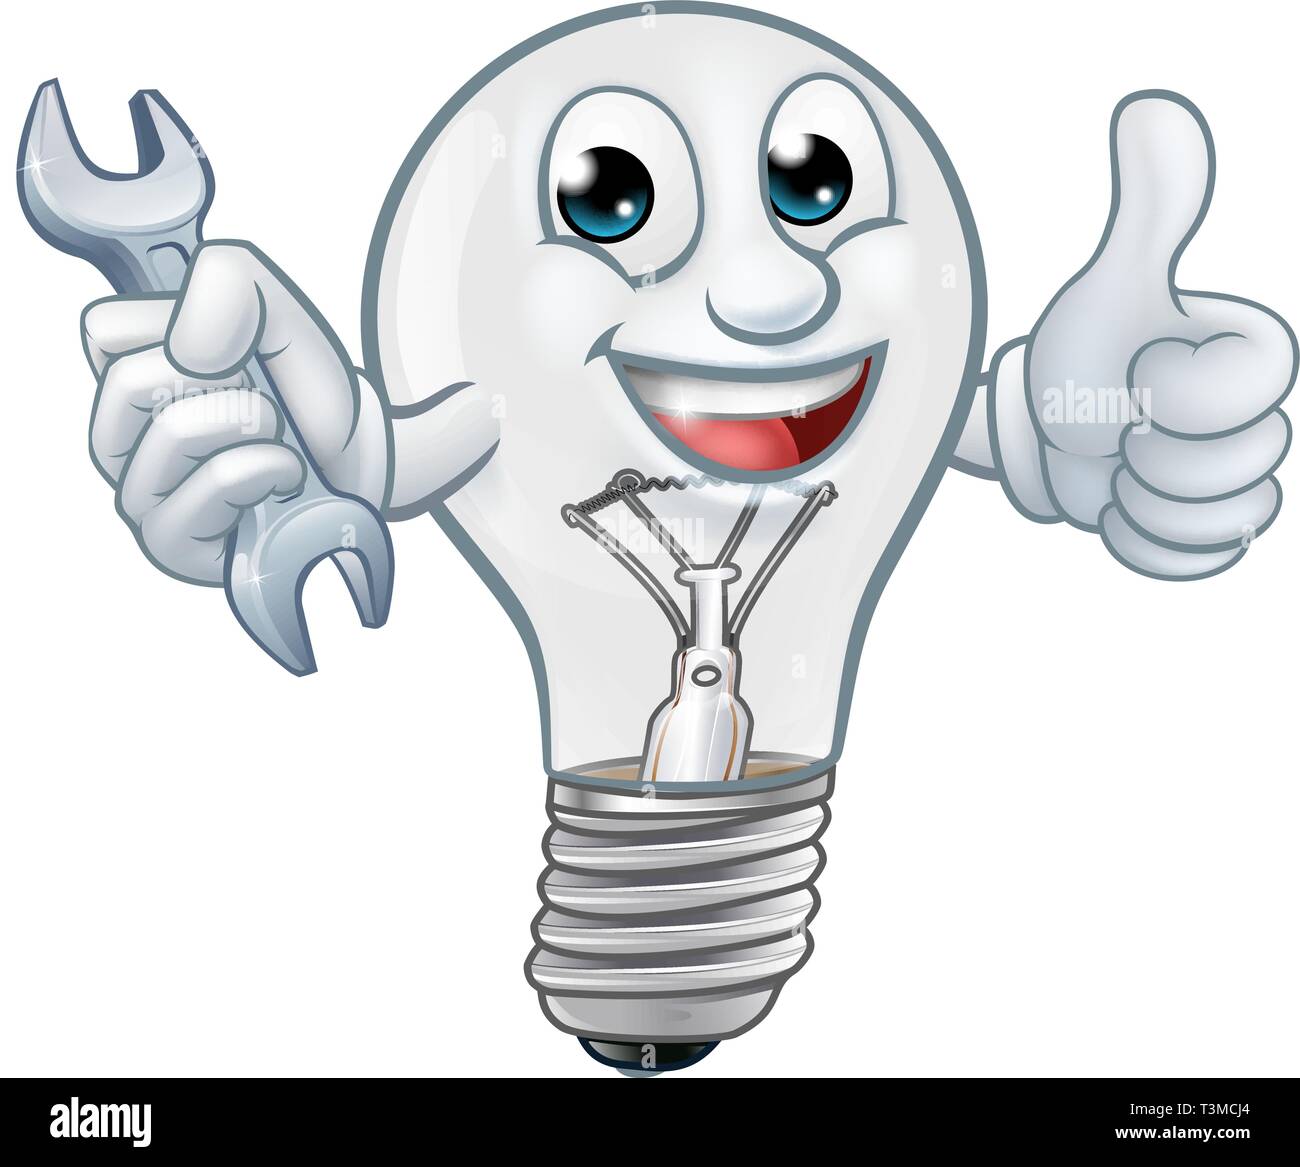 Lampadina della luce dei cartoni animati di mascotte di lampadine Immagine  e Vettoriale - Alamy